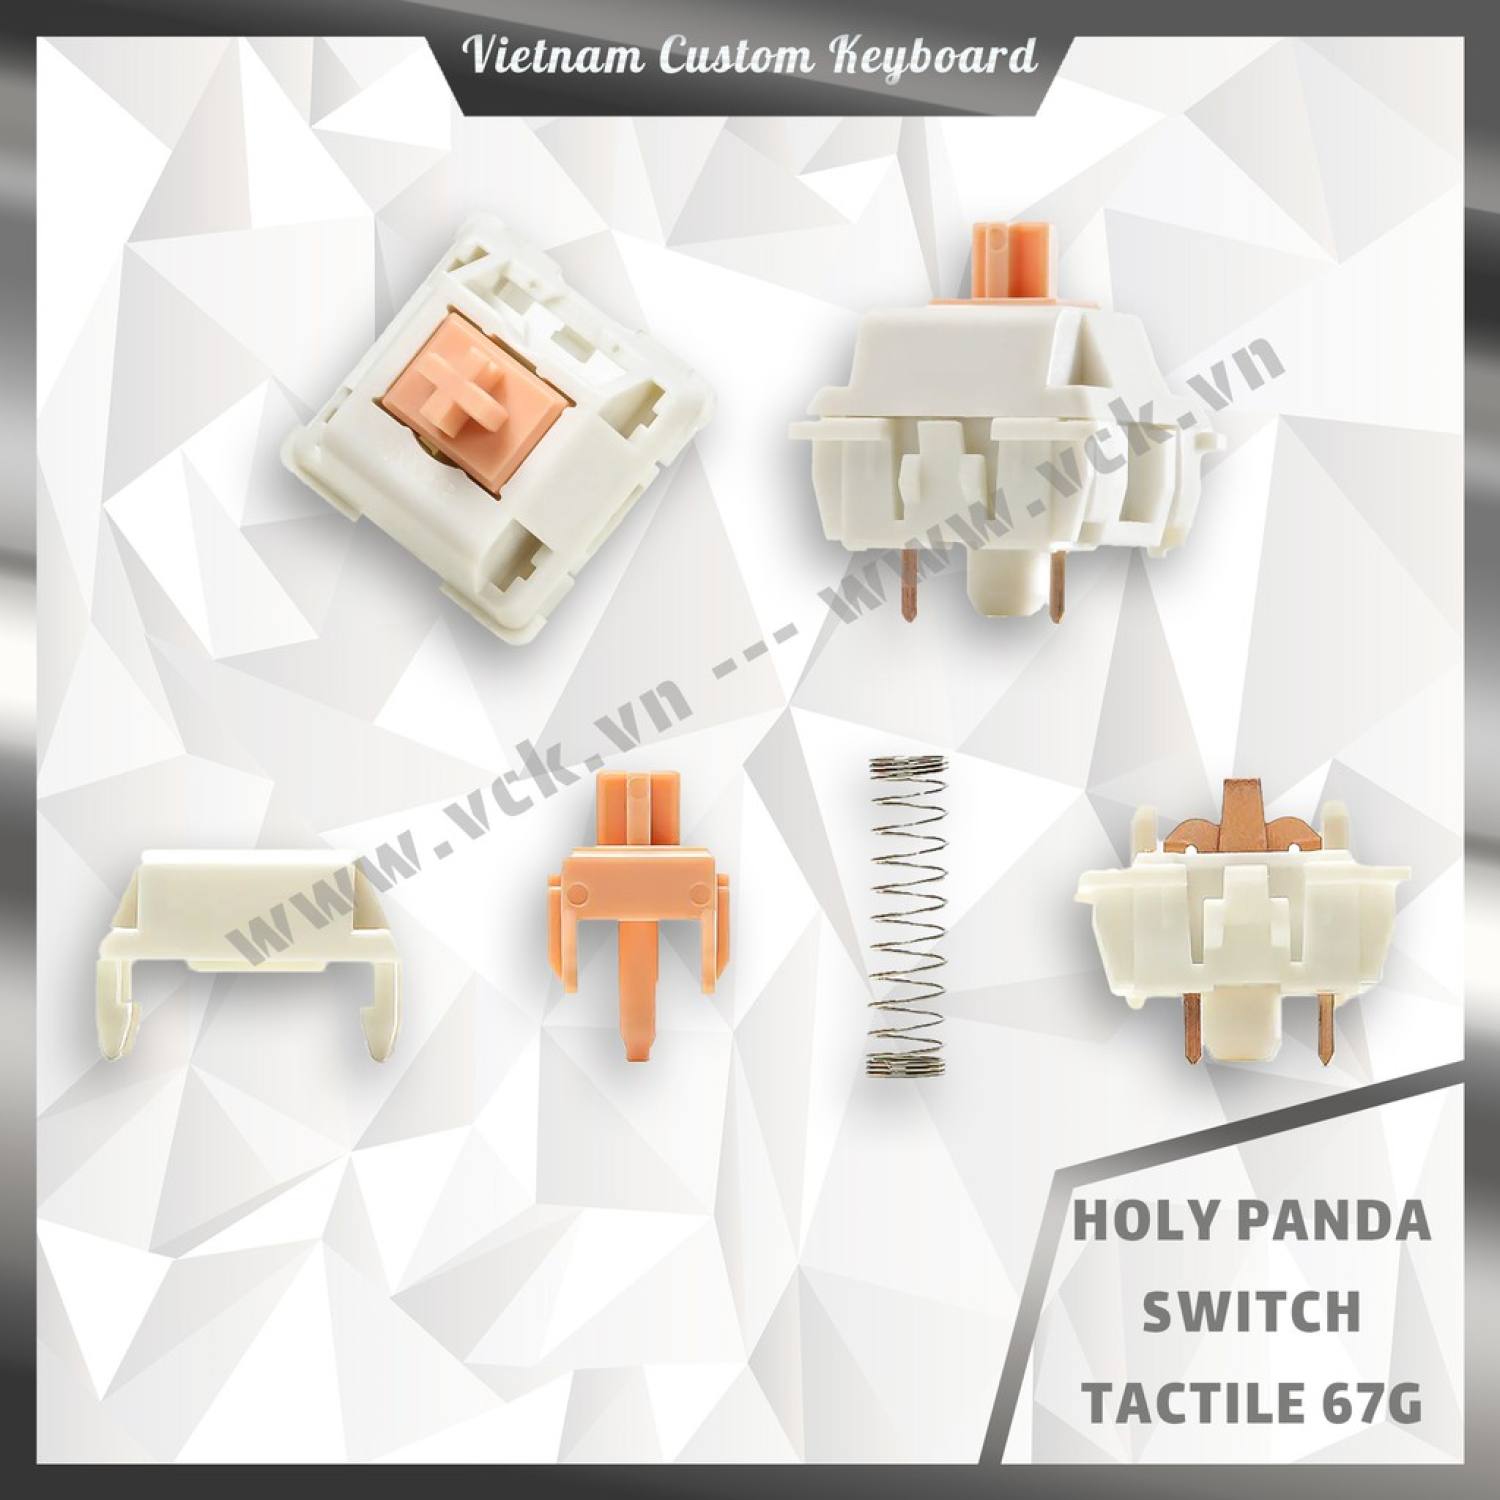 Holy Panda Switch | Tactile 67g | Invyr X Drop | Switch Huyền Thoại Dùng Cho Bàn Phím Cơ | VCK